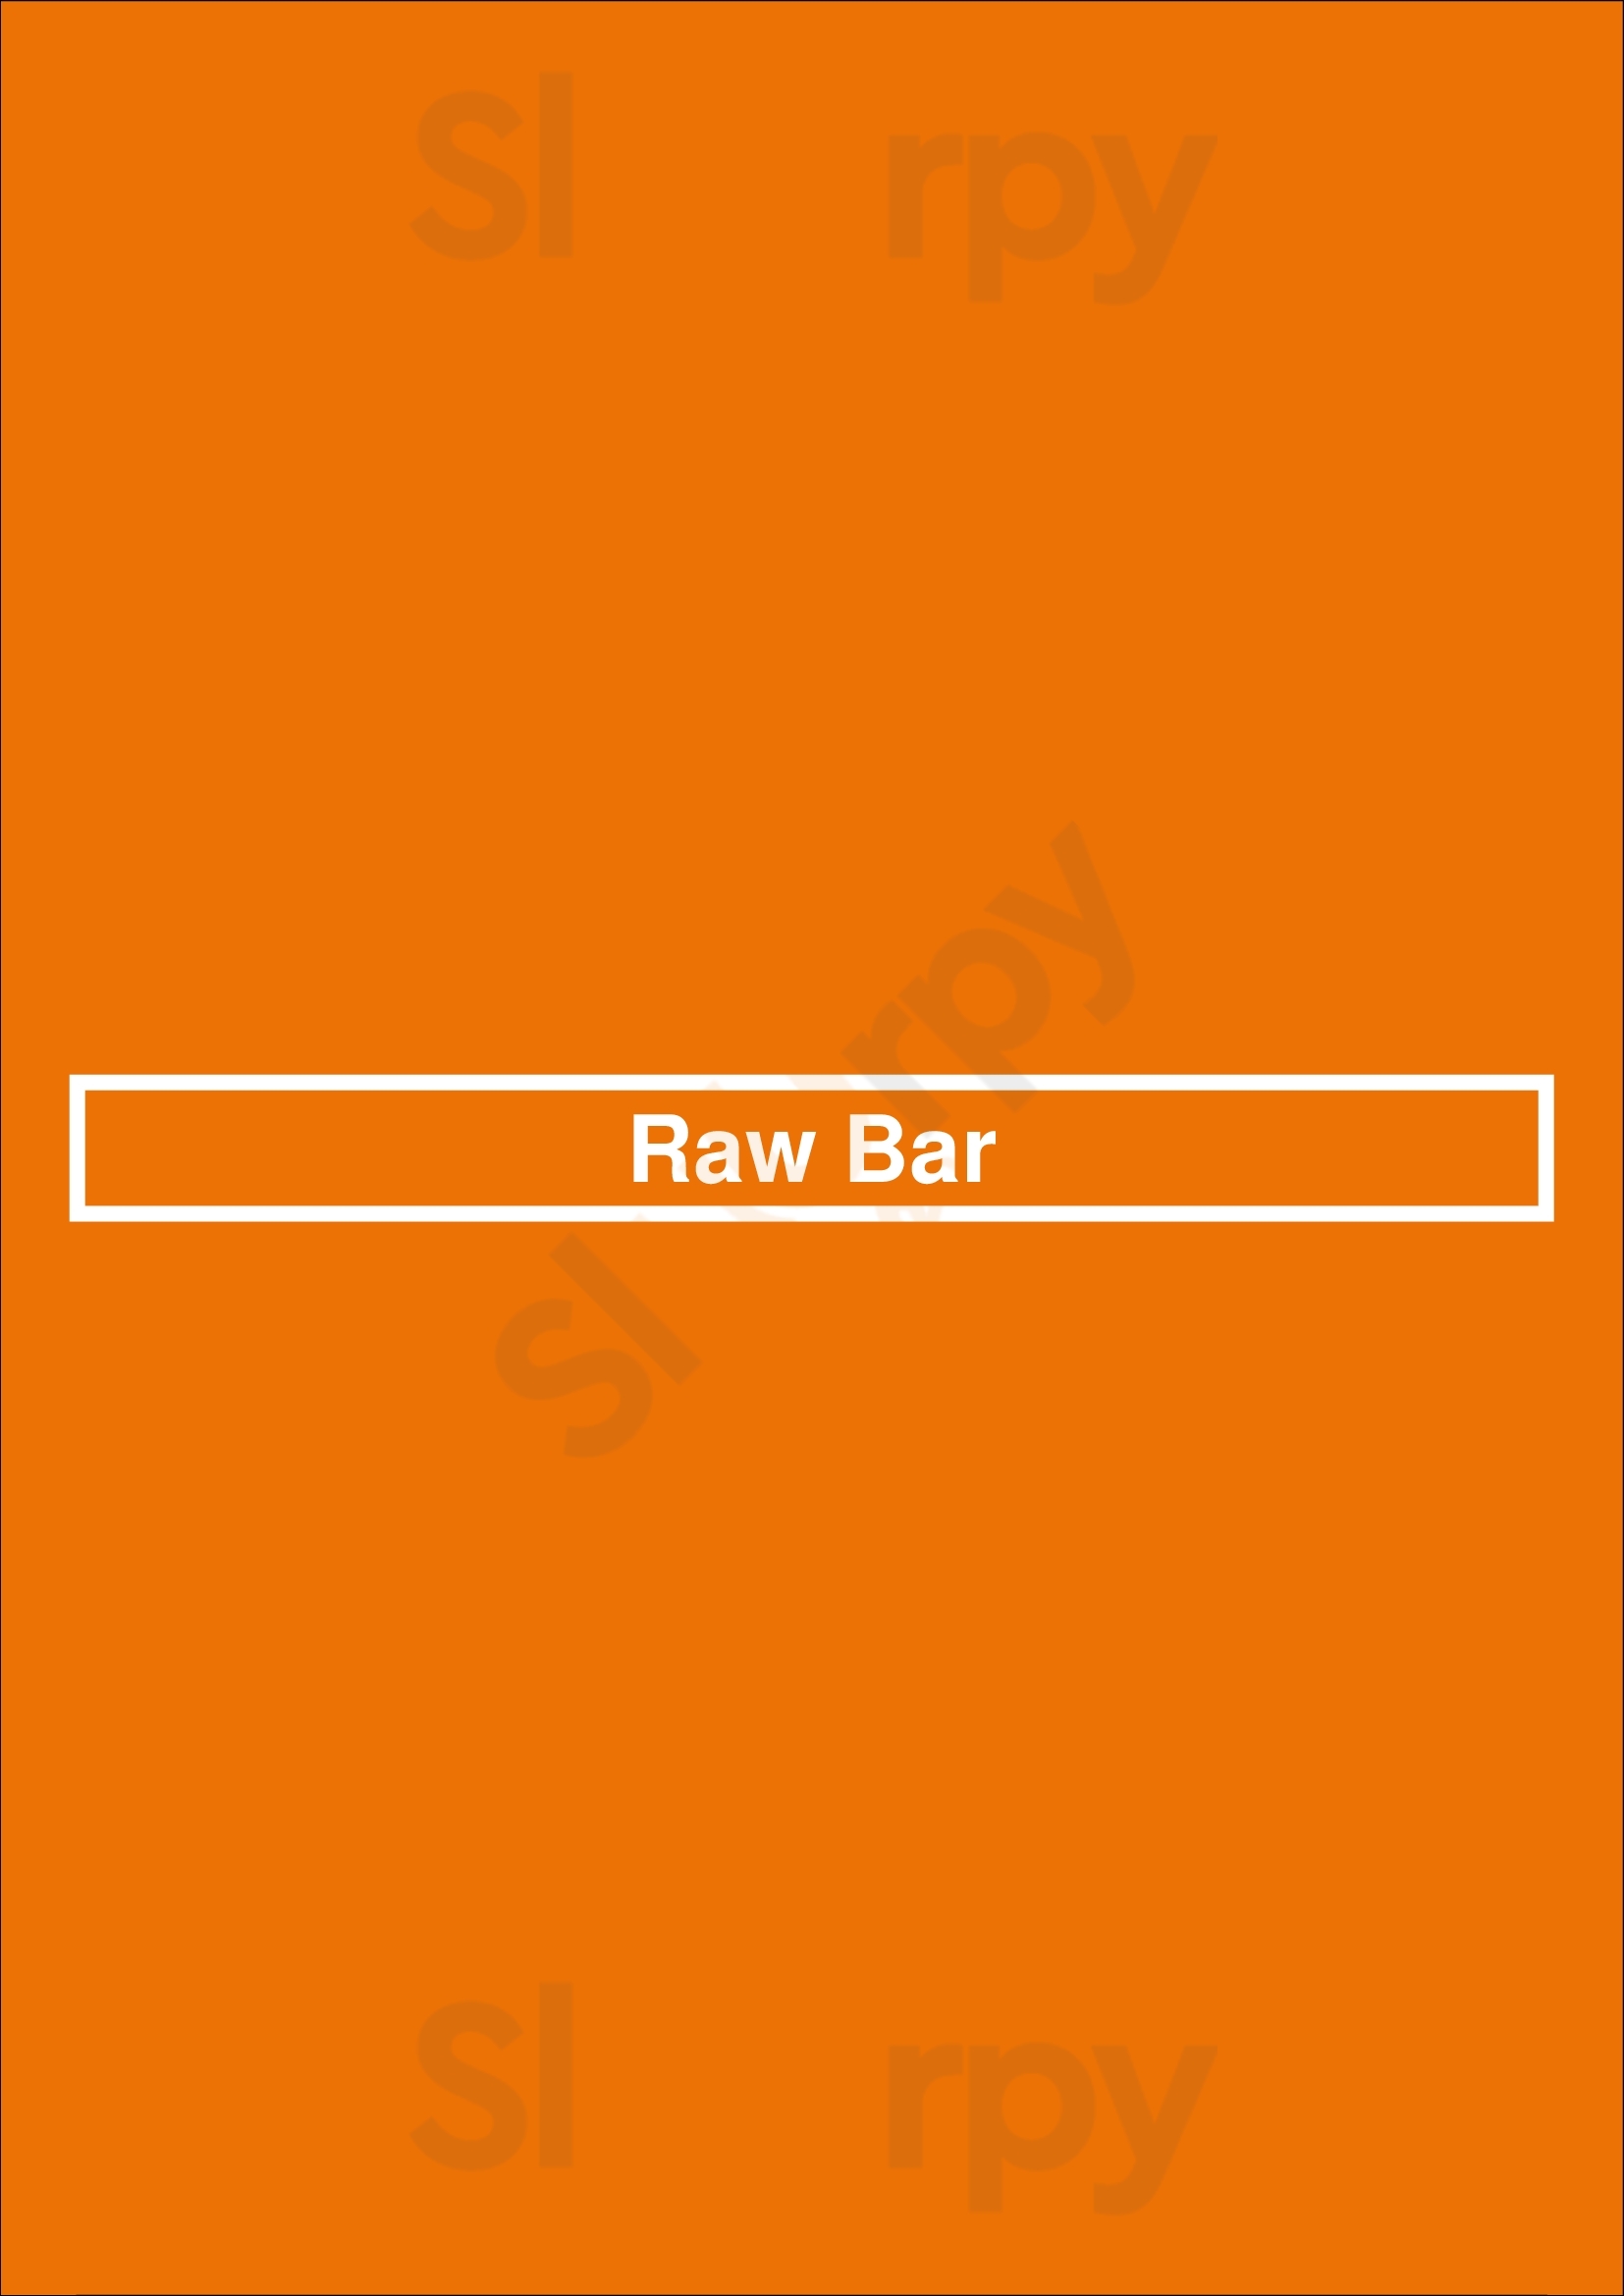 Raw Bar Calgary Menu - 1